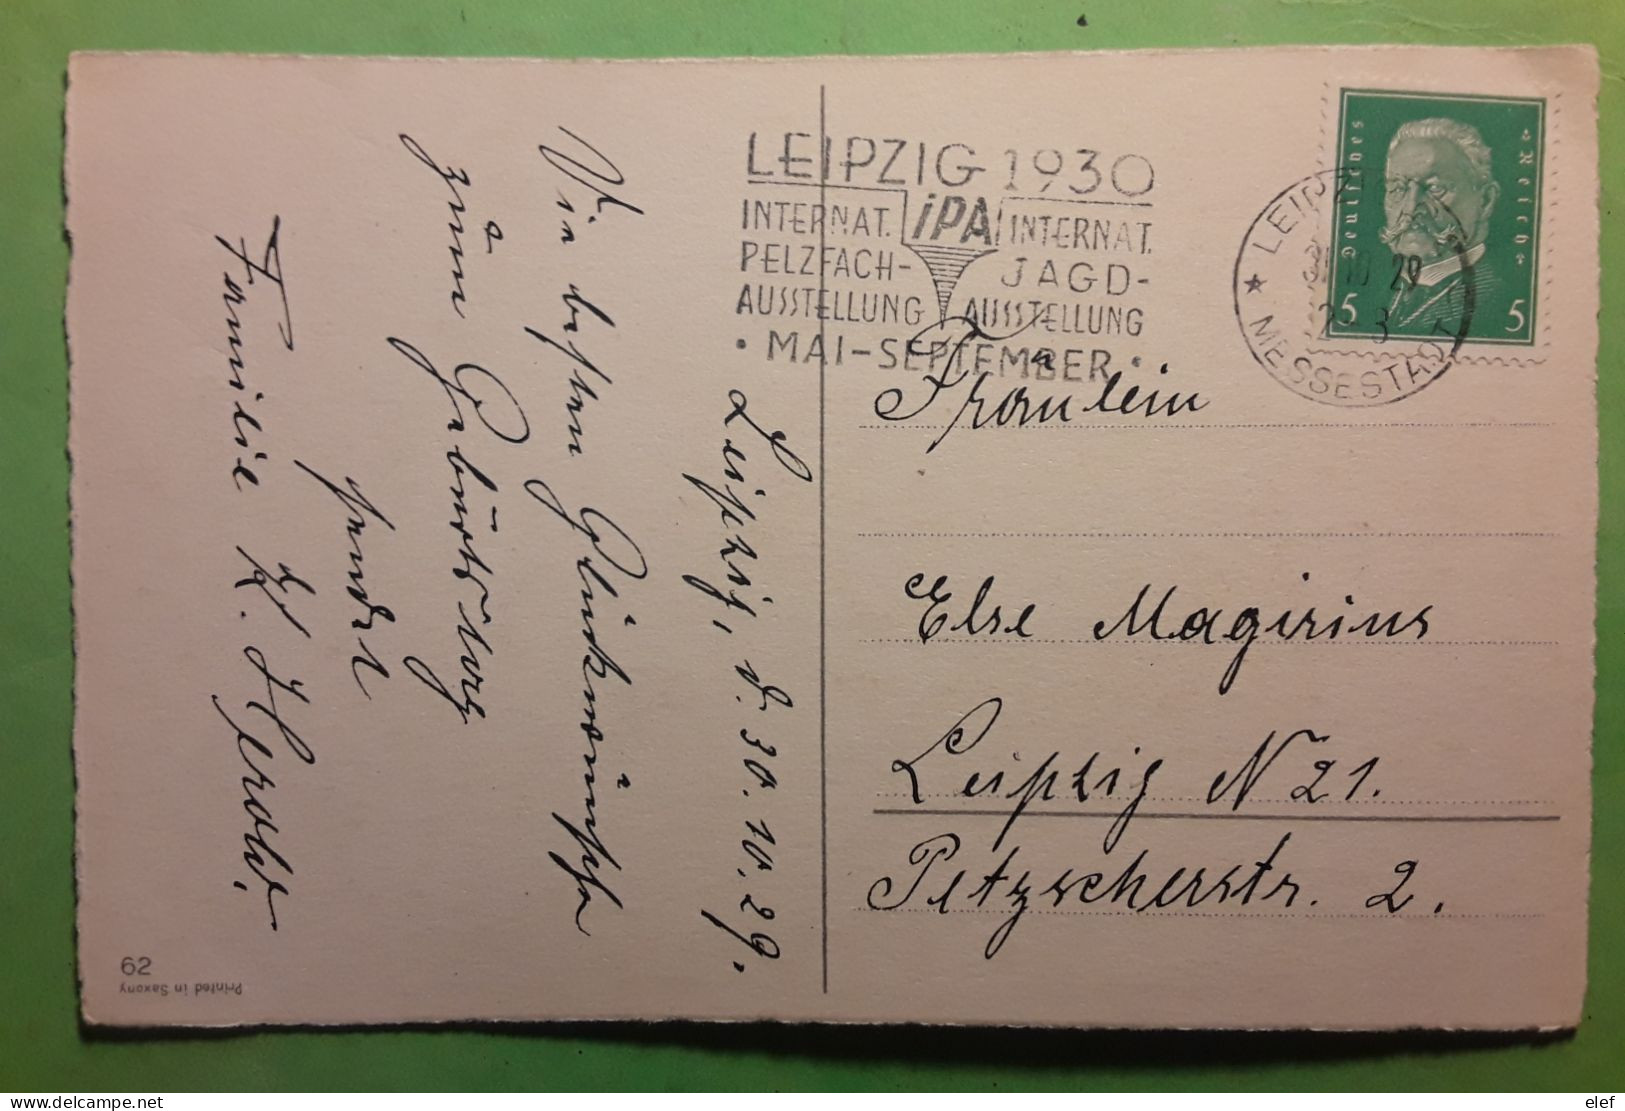 Flamme Chasse   IPA Internat PELZFACH JAGD AUSTELLUNG LEIPZIG 1930,Deutsches Reich Postkarte Gluckwunsch Z Geburtstage - Schieten (Wapens)